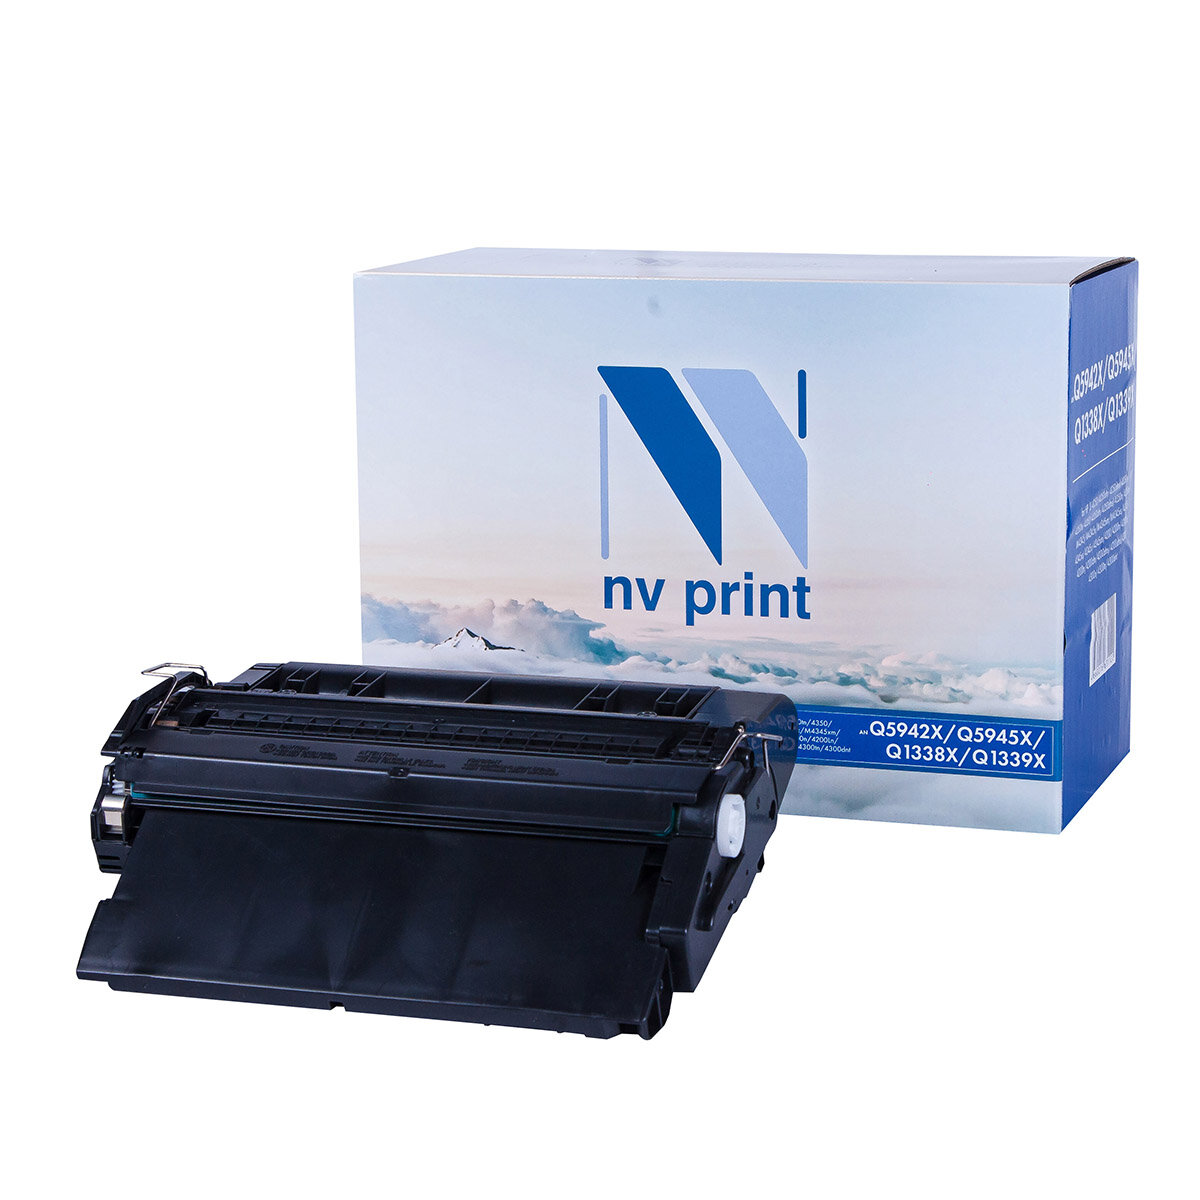 Картридж NV Print Q5942X/Q5945X/Q1338X/Q1339X для Нewlett-Packard LaserJet 4250/4350/M4345/4345/4200/4300 (20000k)